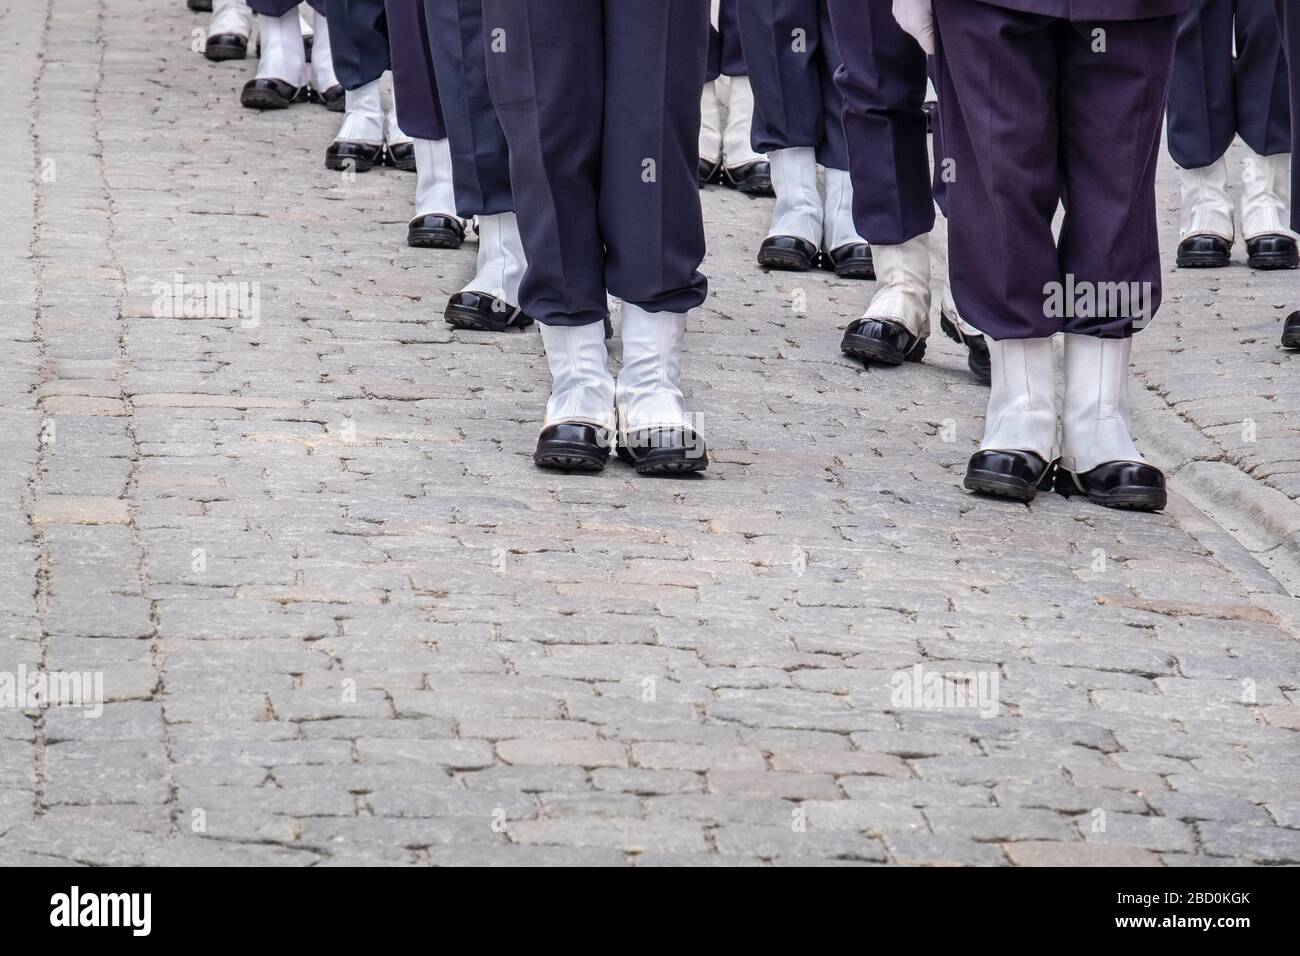 Détachement des gardes royaux suédois portant des uniformes militaires. Stockholm, Suède Banque D'Images